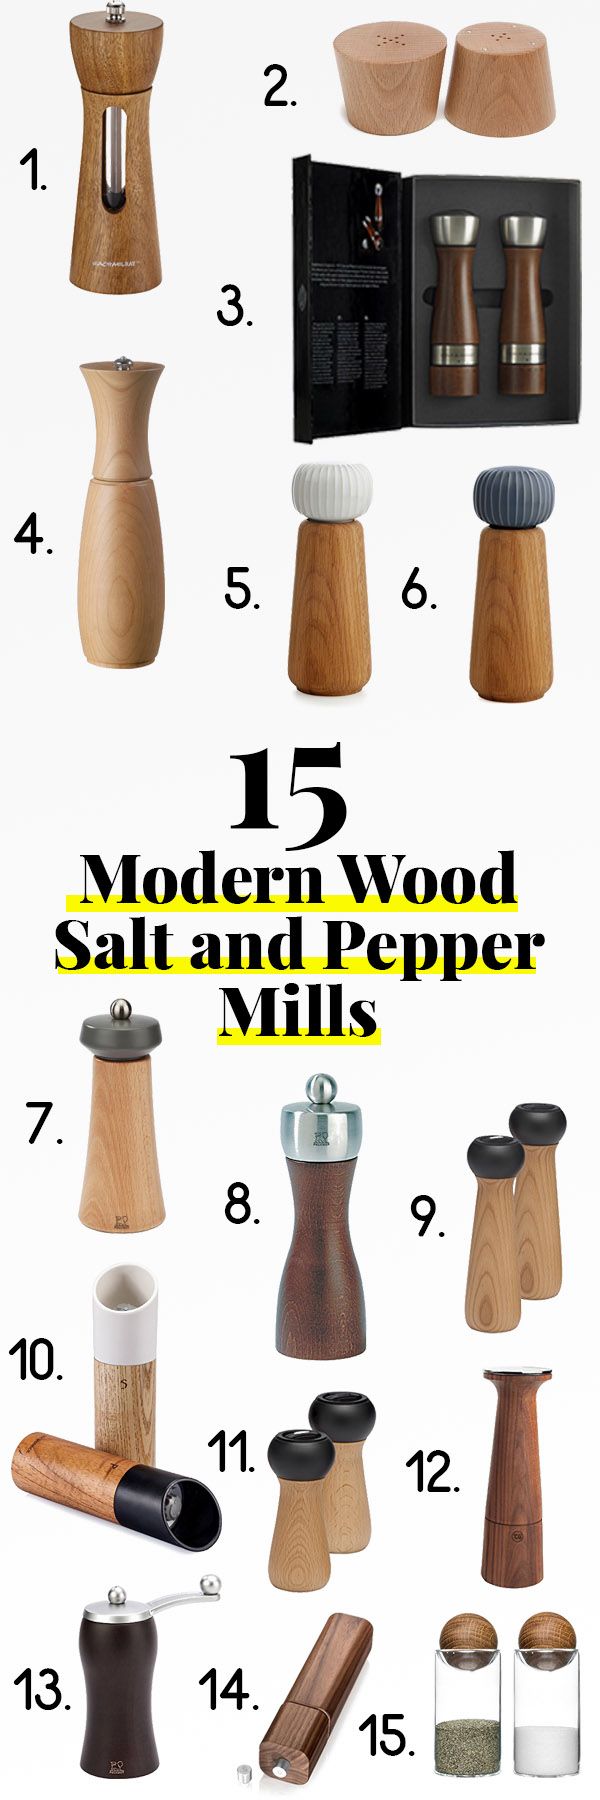 modern salt and pepper mills